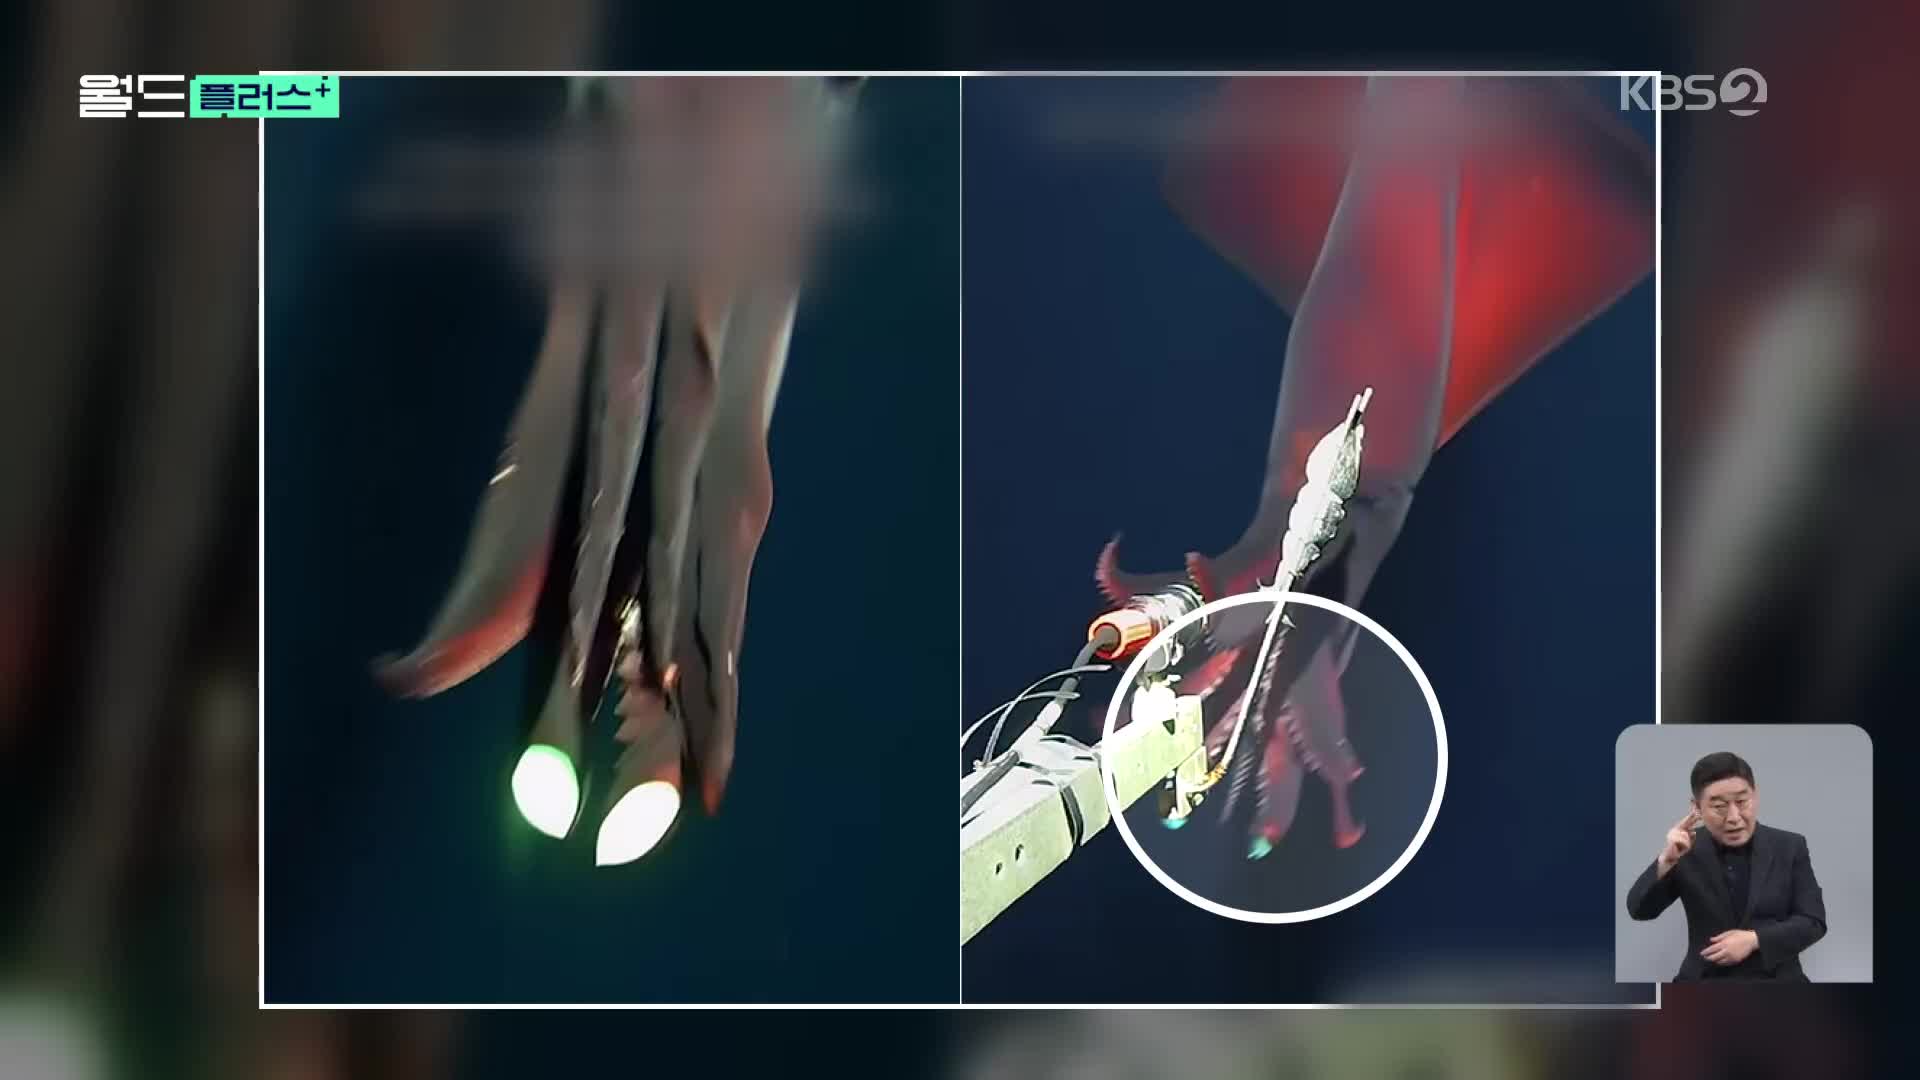 [월드 플러스] 희귀 심해 오징어의 사냥 순간 포착 ‘다리에서 섬광 번쩍’